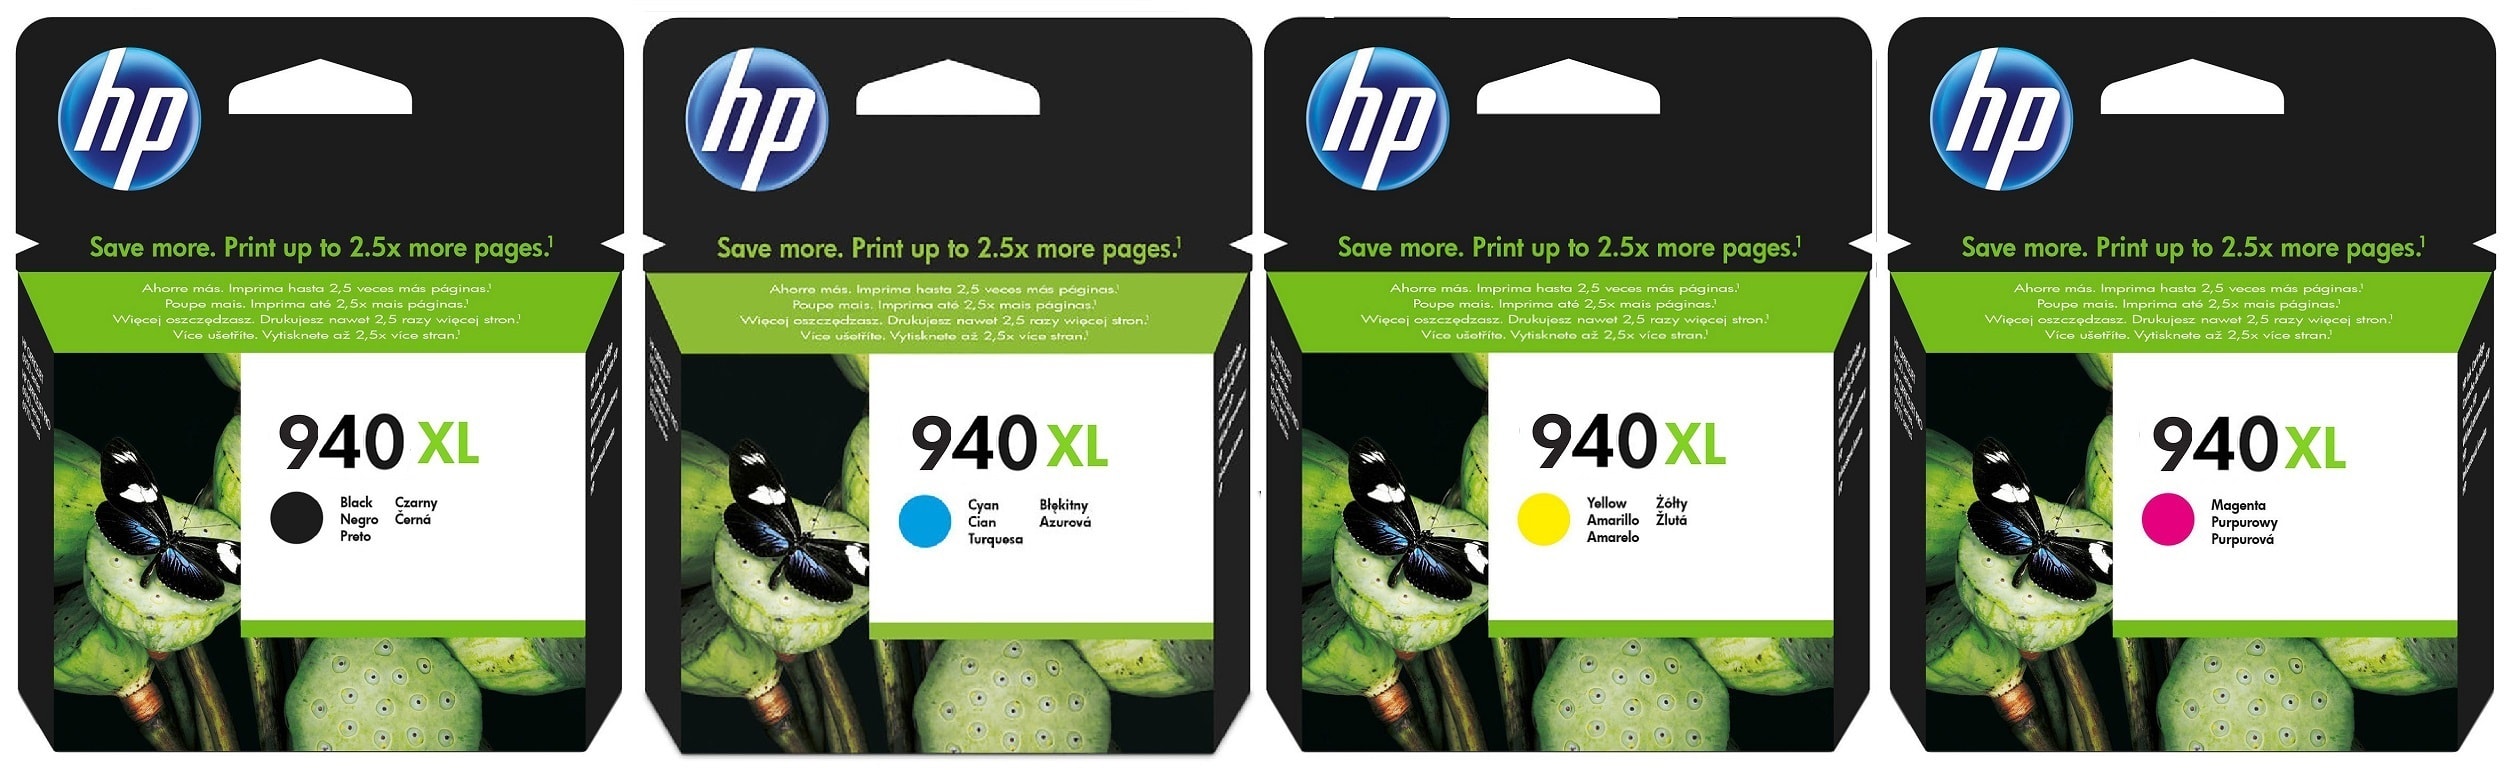 Картриджи hp 940xl для HP Officejet Pro 8500. Купить комплект оригинальных картриджей.